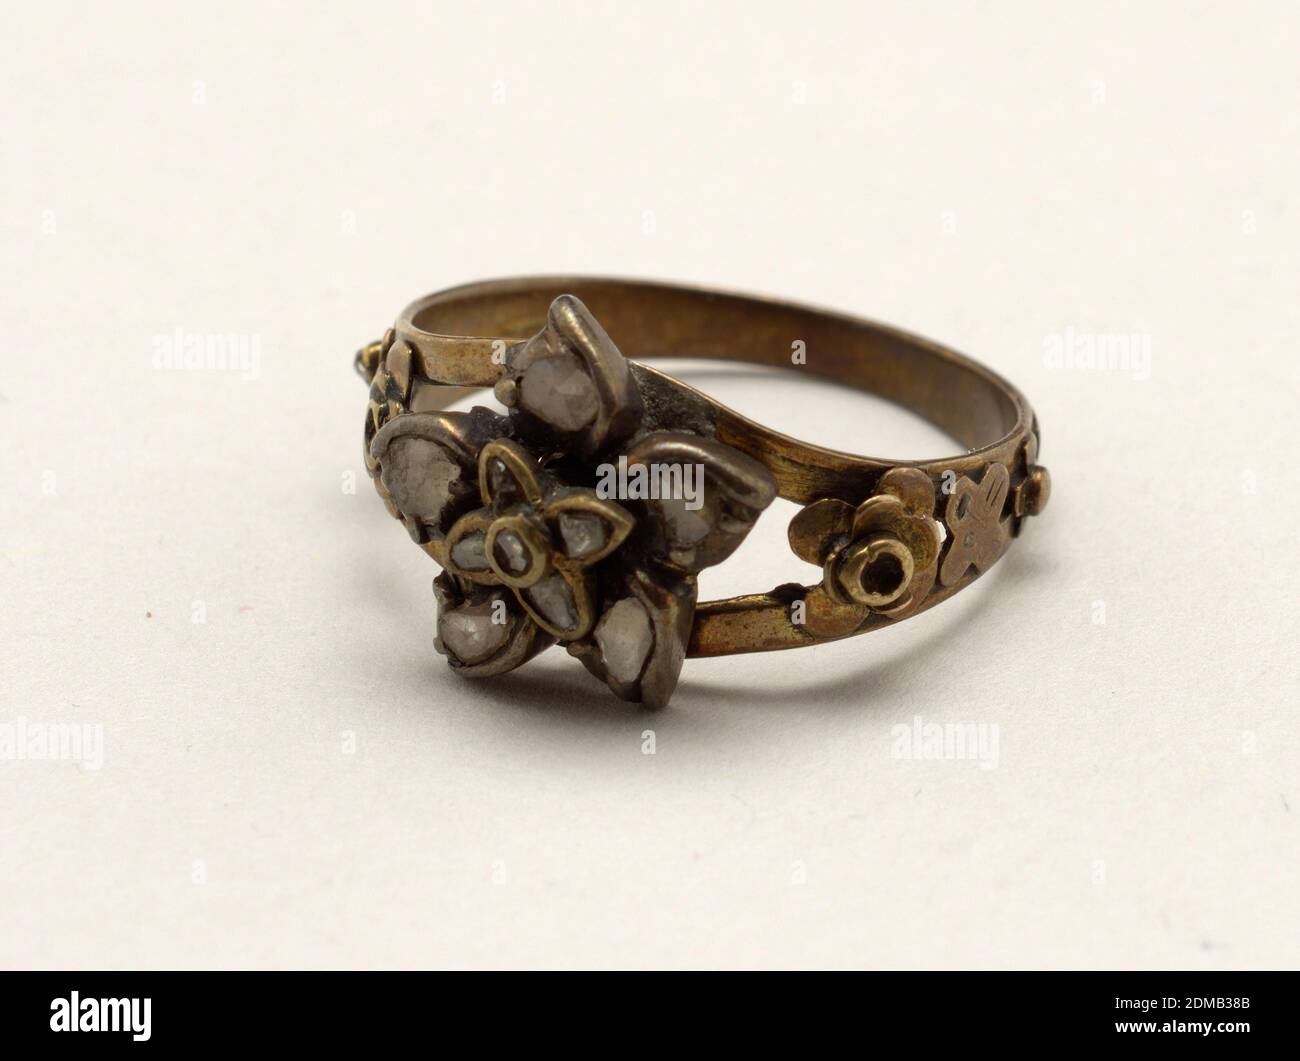 Anello, oro, diamanti rosa, anello d'oro che si separa in due fasce su cui  è un ornamento di un fiore (fatto di oro) con petali di diamanti rosa. Ai  lati dell'anello vi